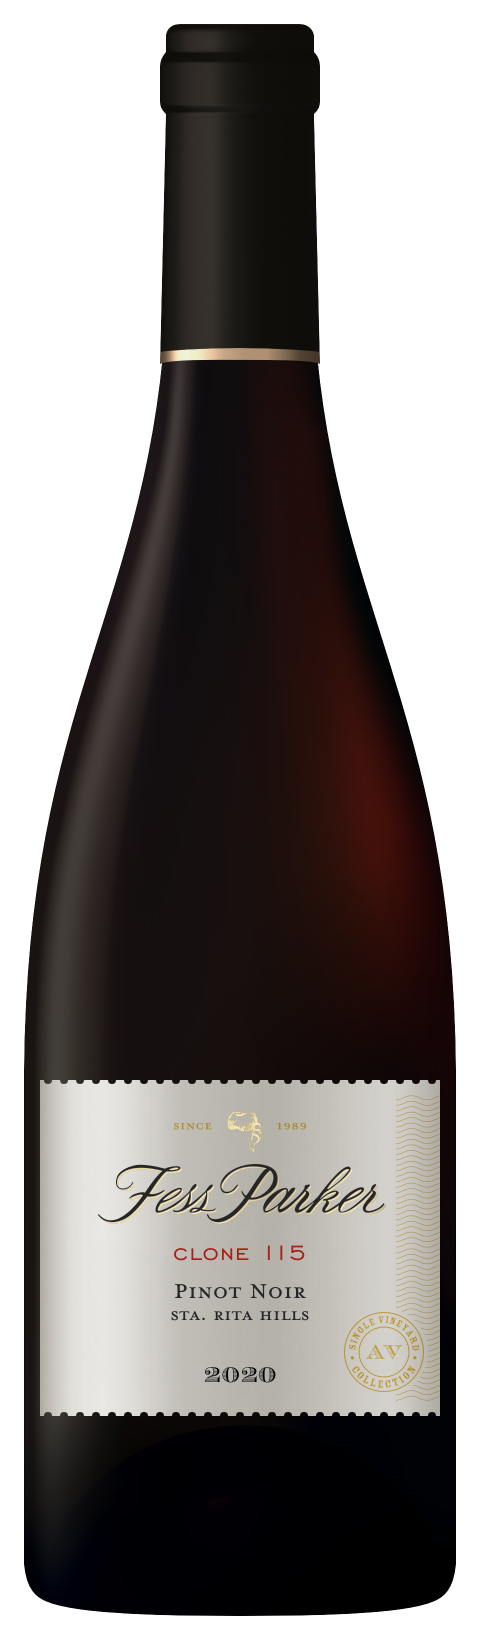 Bottle shot of Clone 115 Pinot Noir